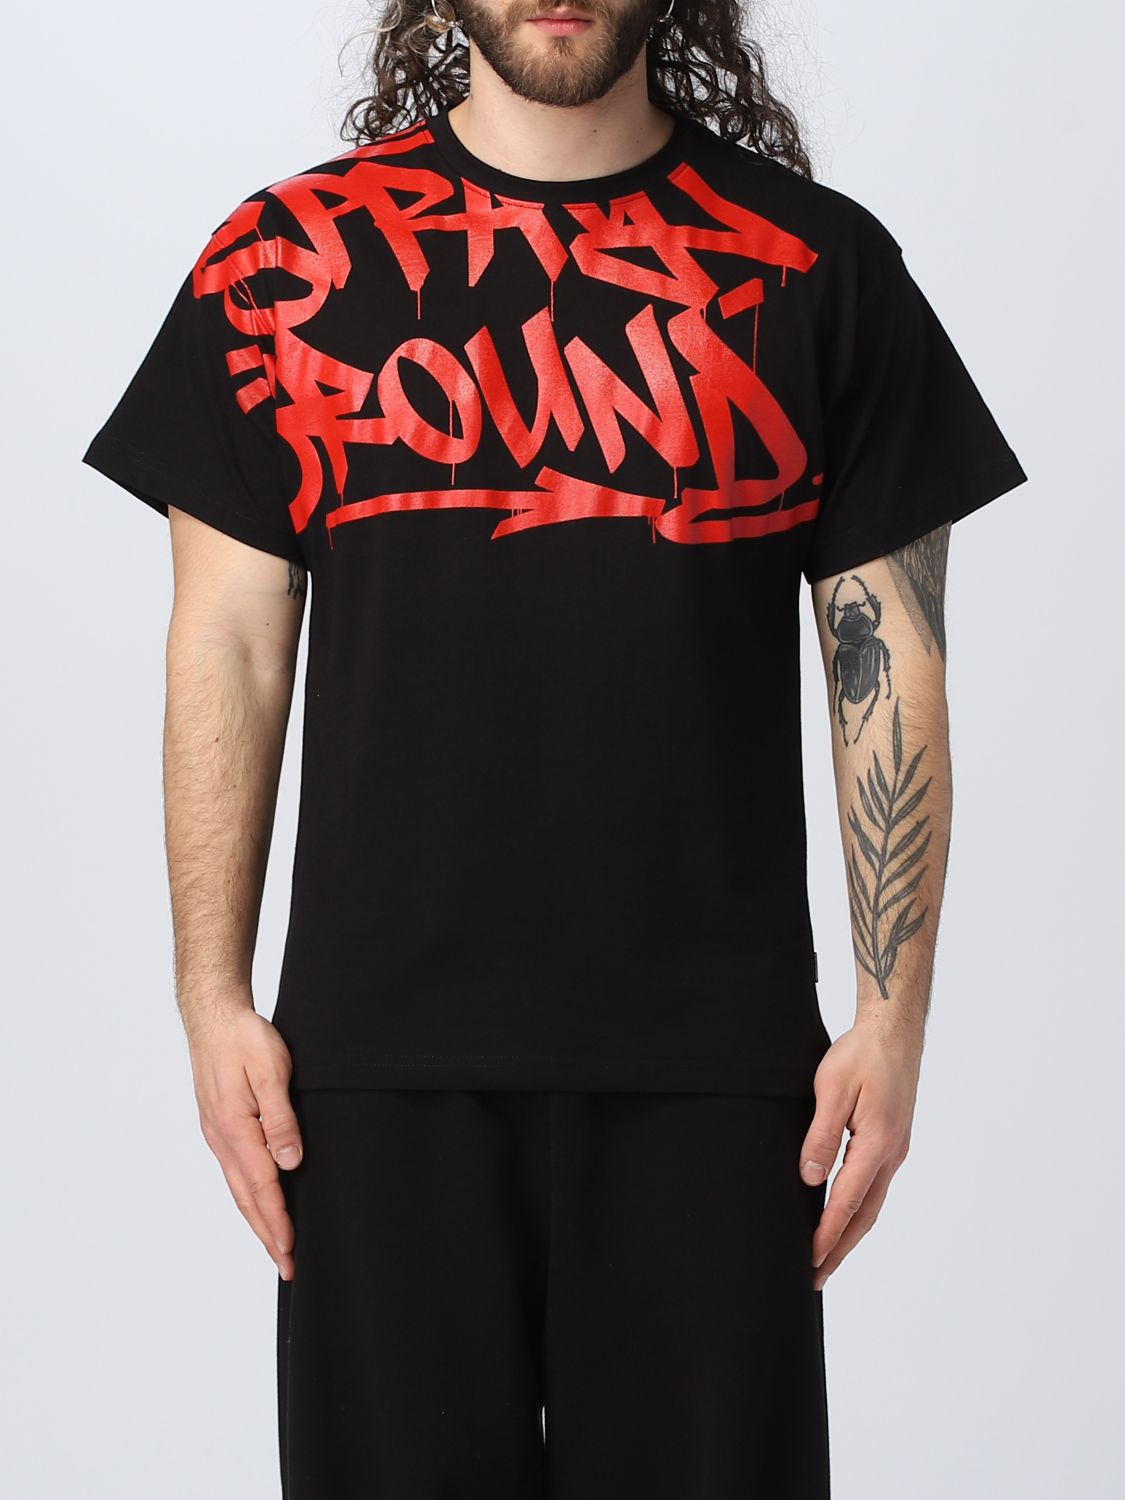 SPRAYGROUND: t-shirt for man - Black | Sprayground t-shirt SP314 online ...